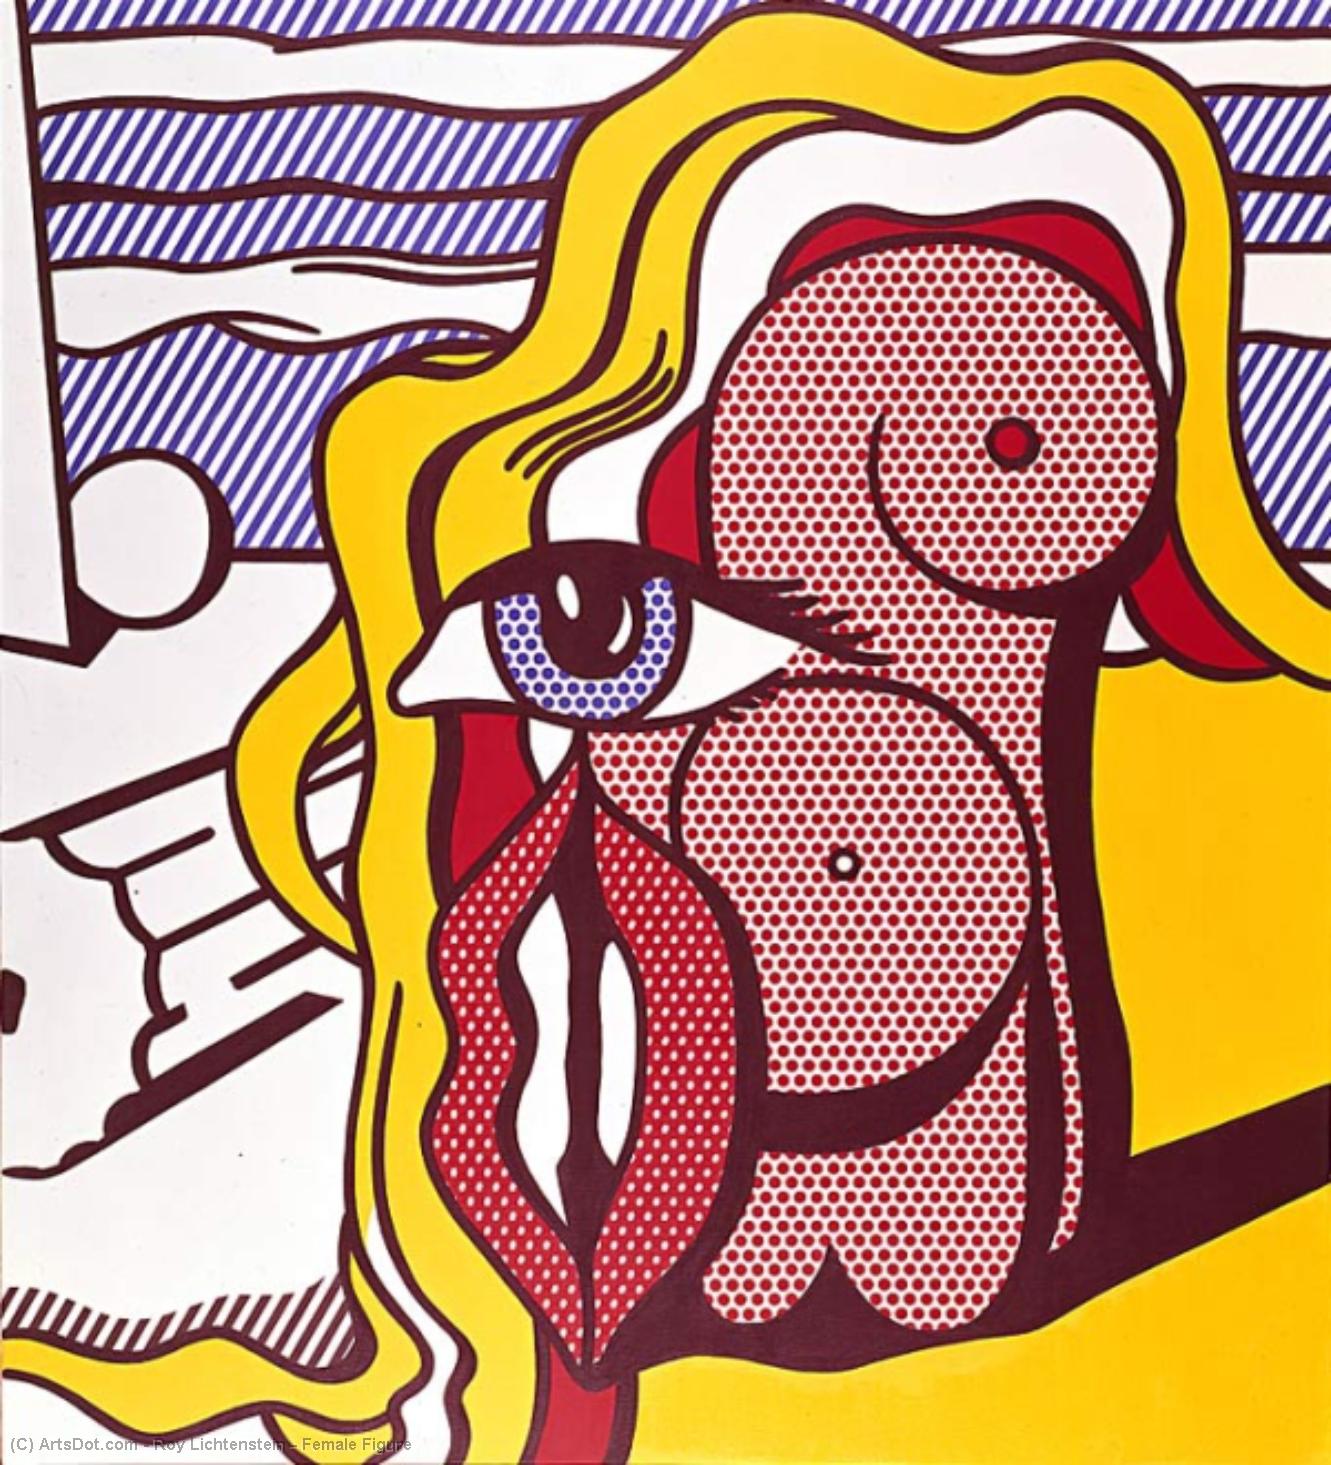 WikiOO.org - Εγκυκλοπαίδεια Καλών Τεχνών - Ζωγραφική, έργα τέχνης Roy Lichtenstein - Female Figure